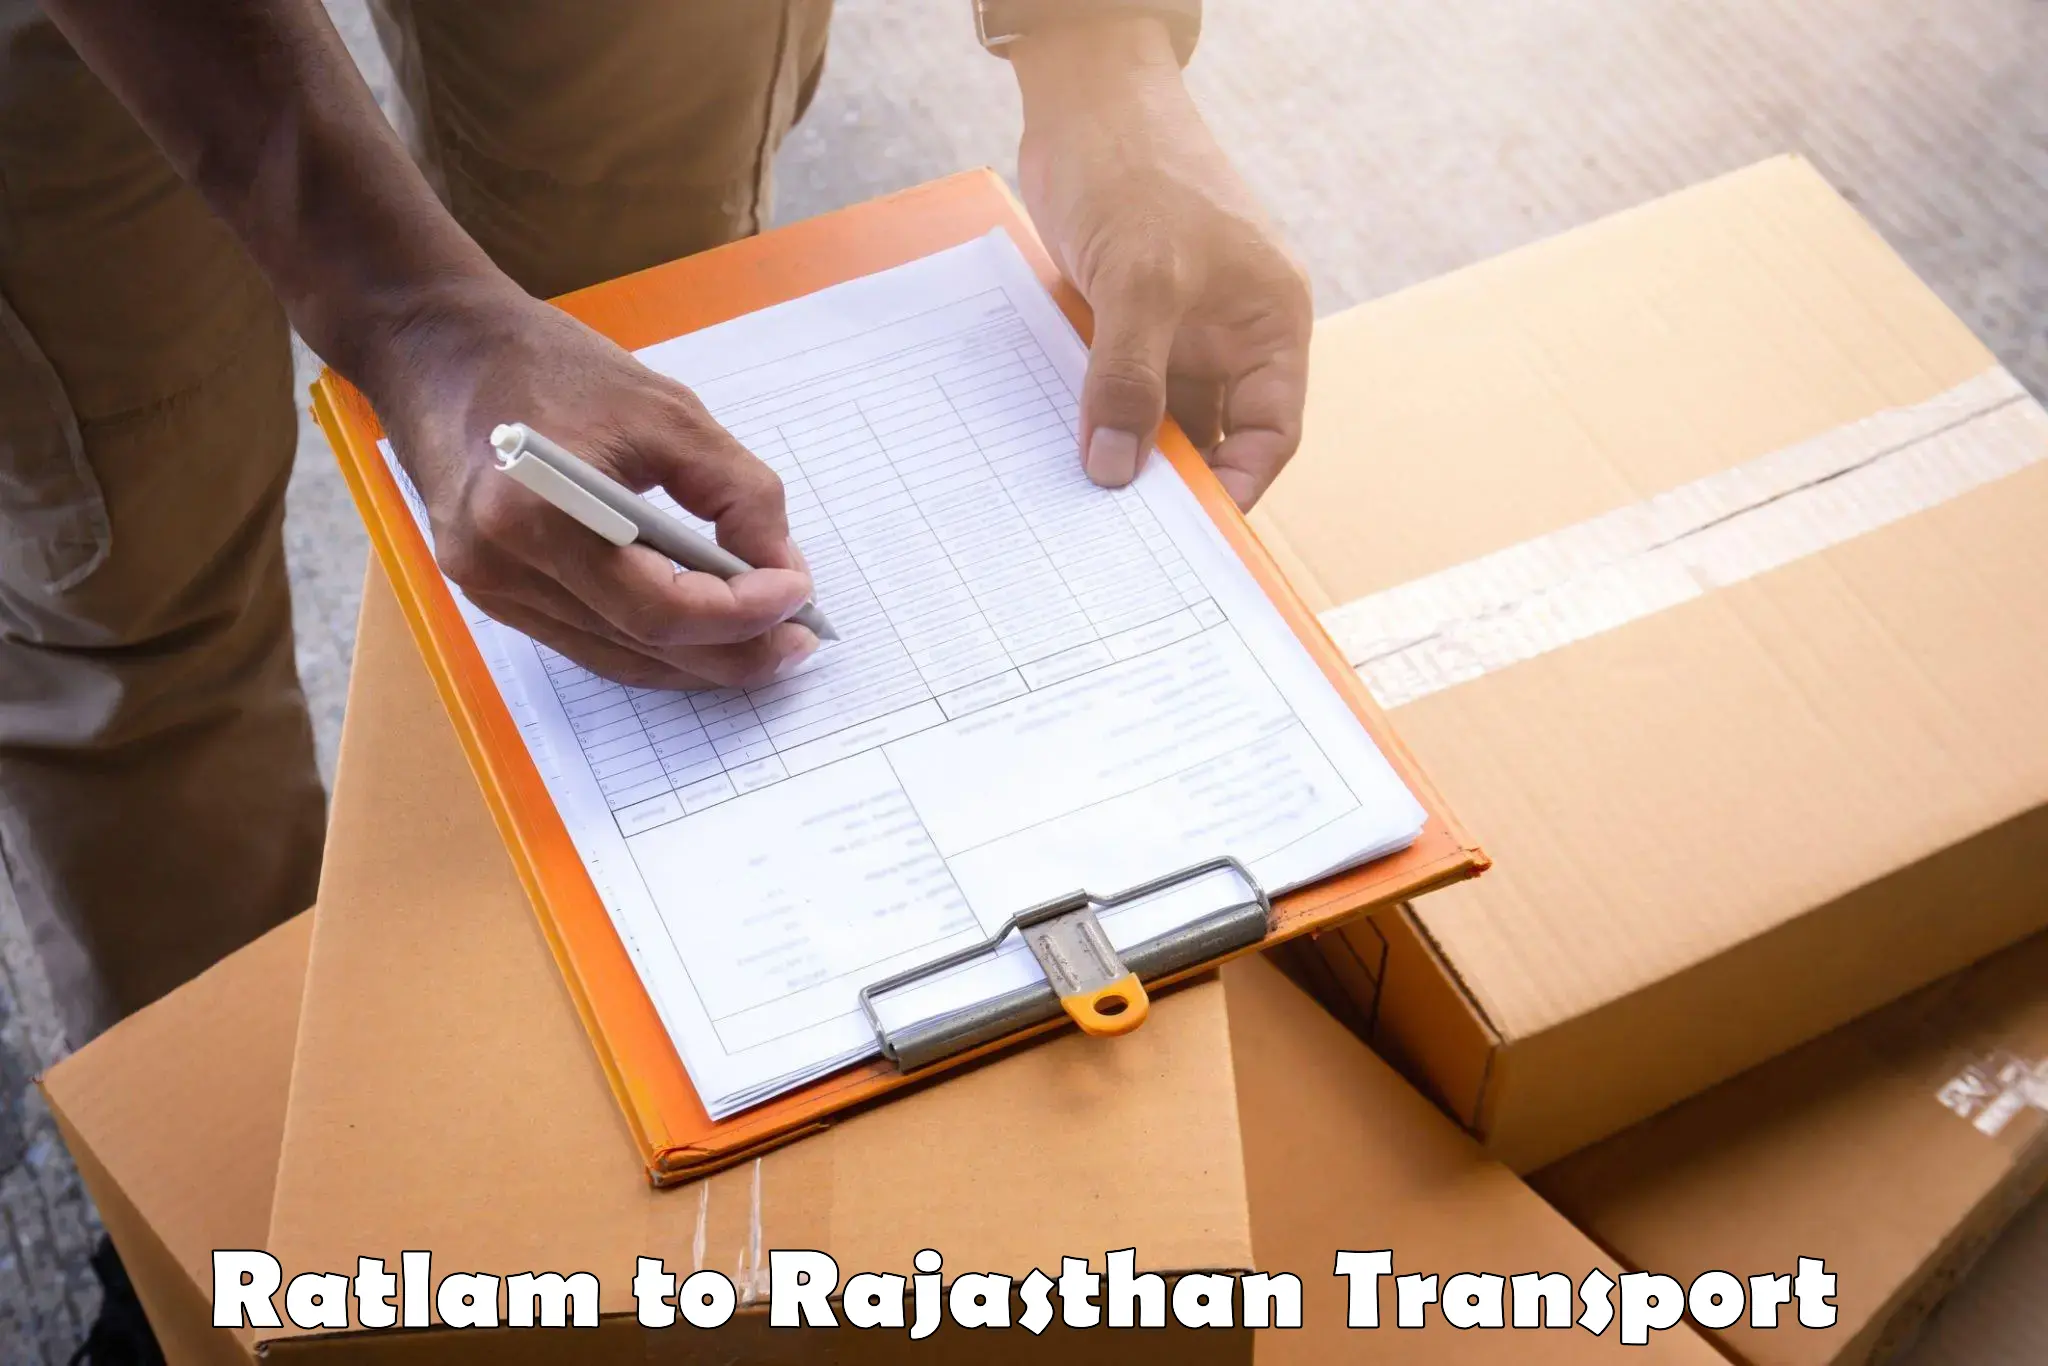 Online transport service Ratlam to Udaipur